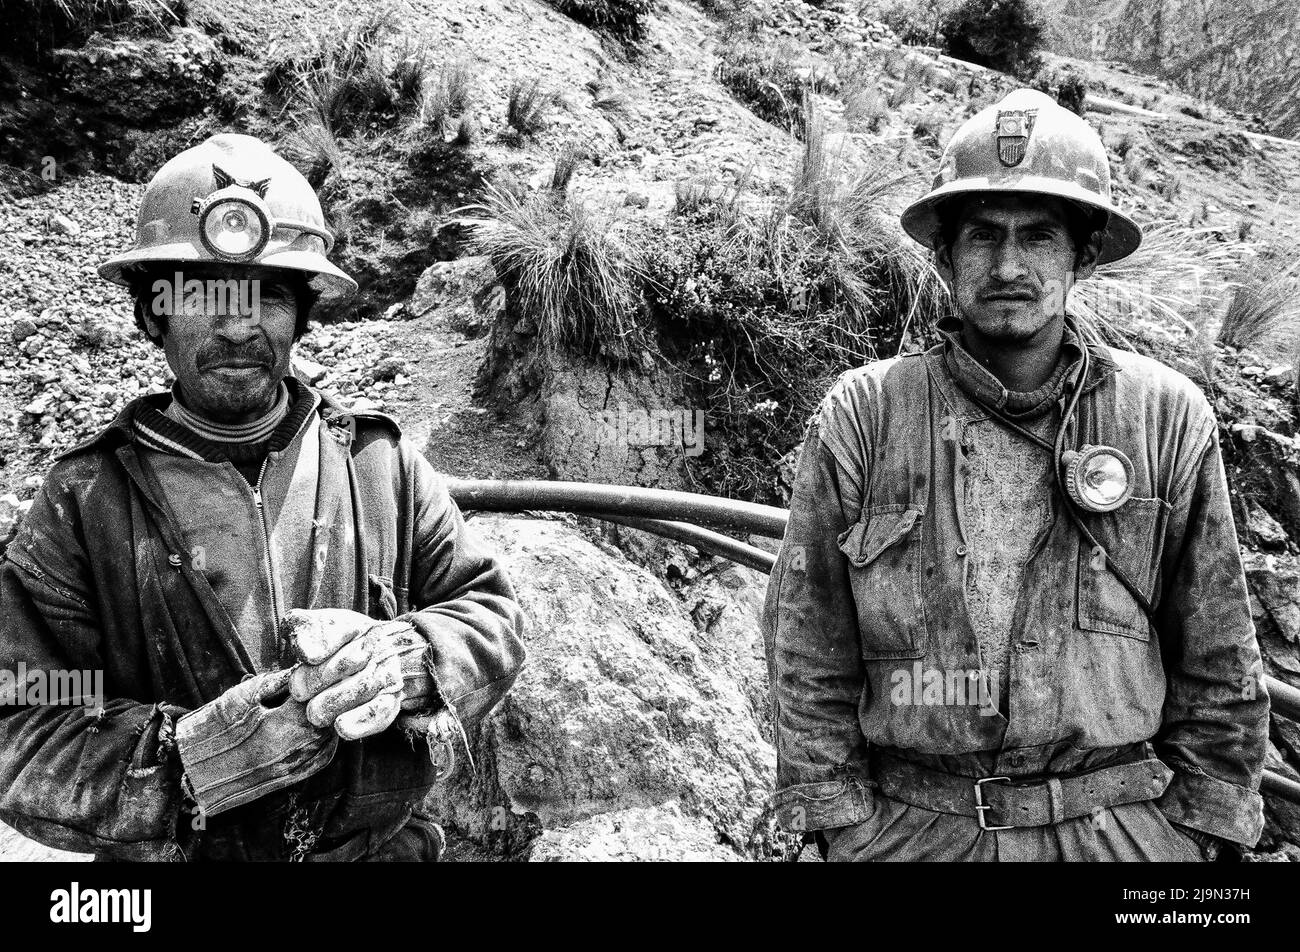 Miners in the high altitude of Cerro de Pasco, Peru Stock Photo